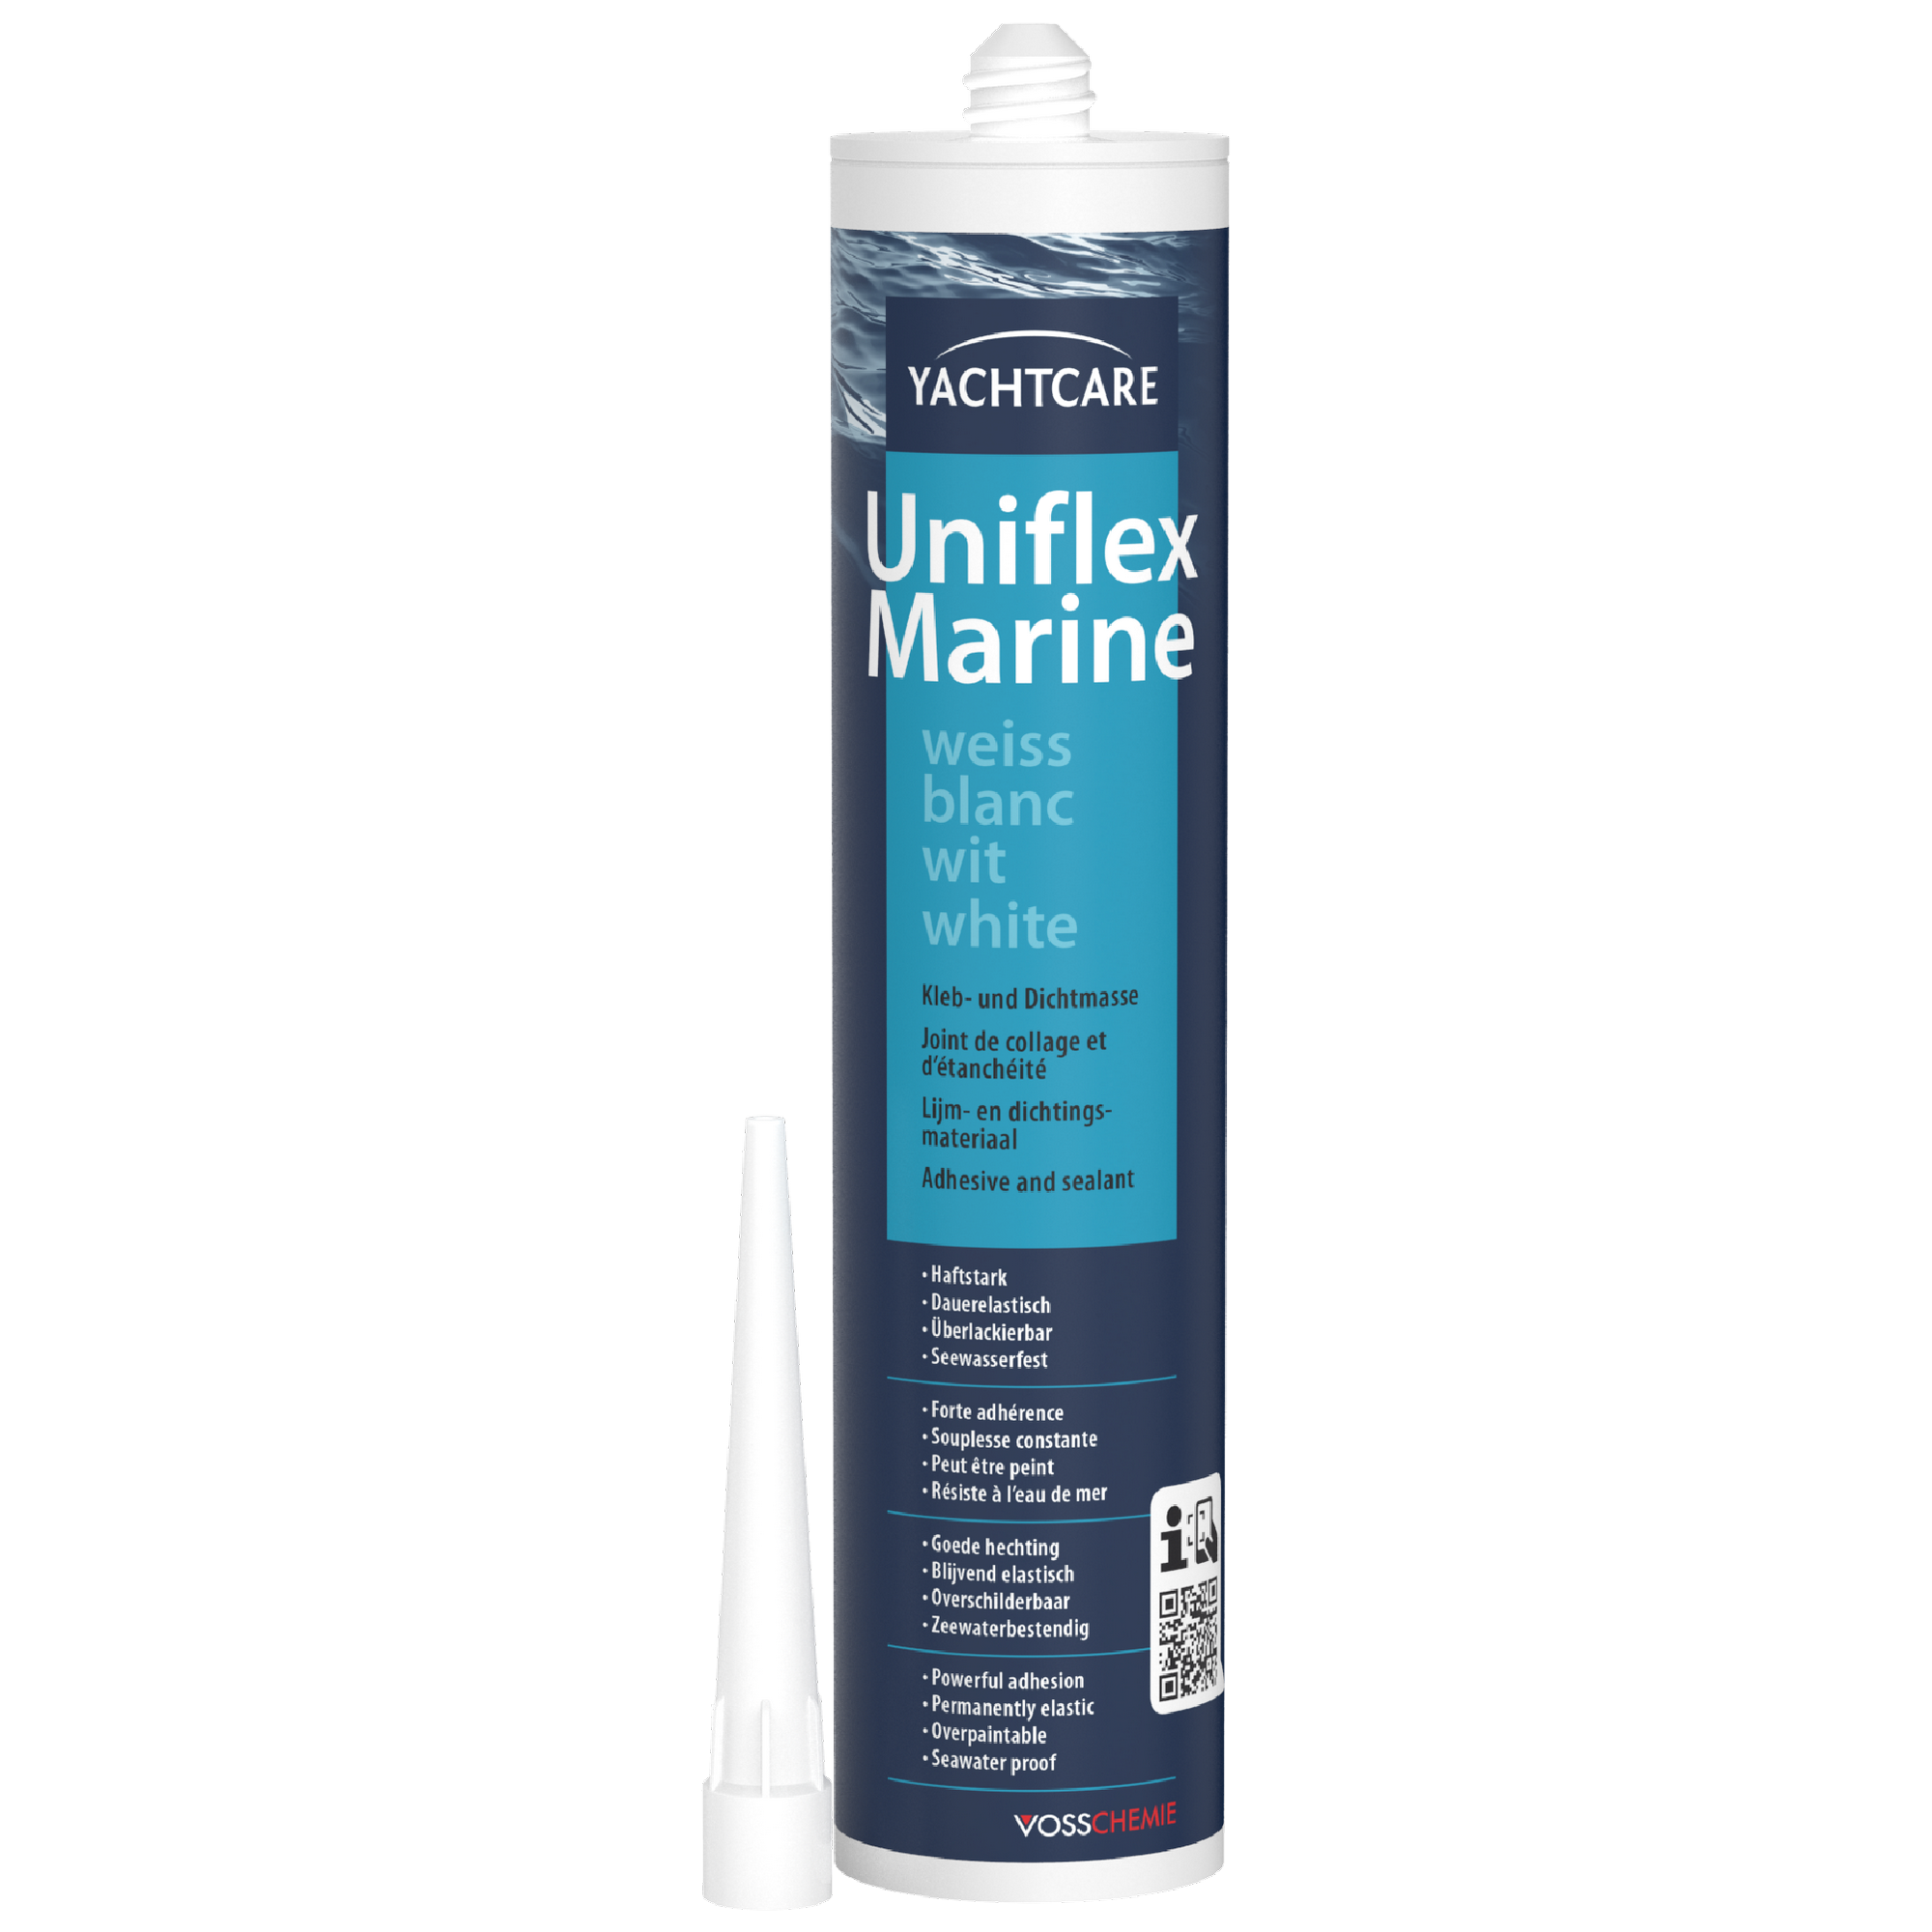 Dauerelastische Kleb- und Dichtmasse 'Uniflex Marine' weiß 310 ml + product picture